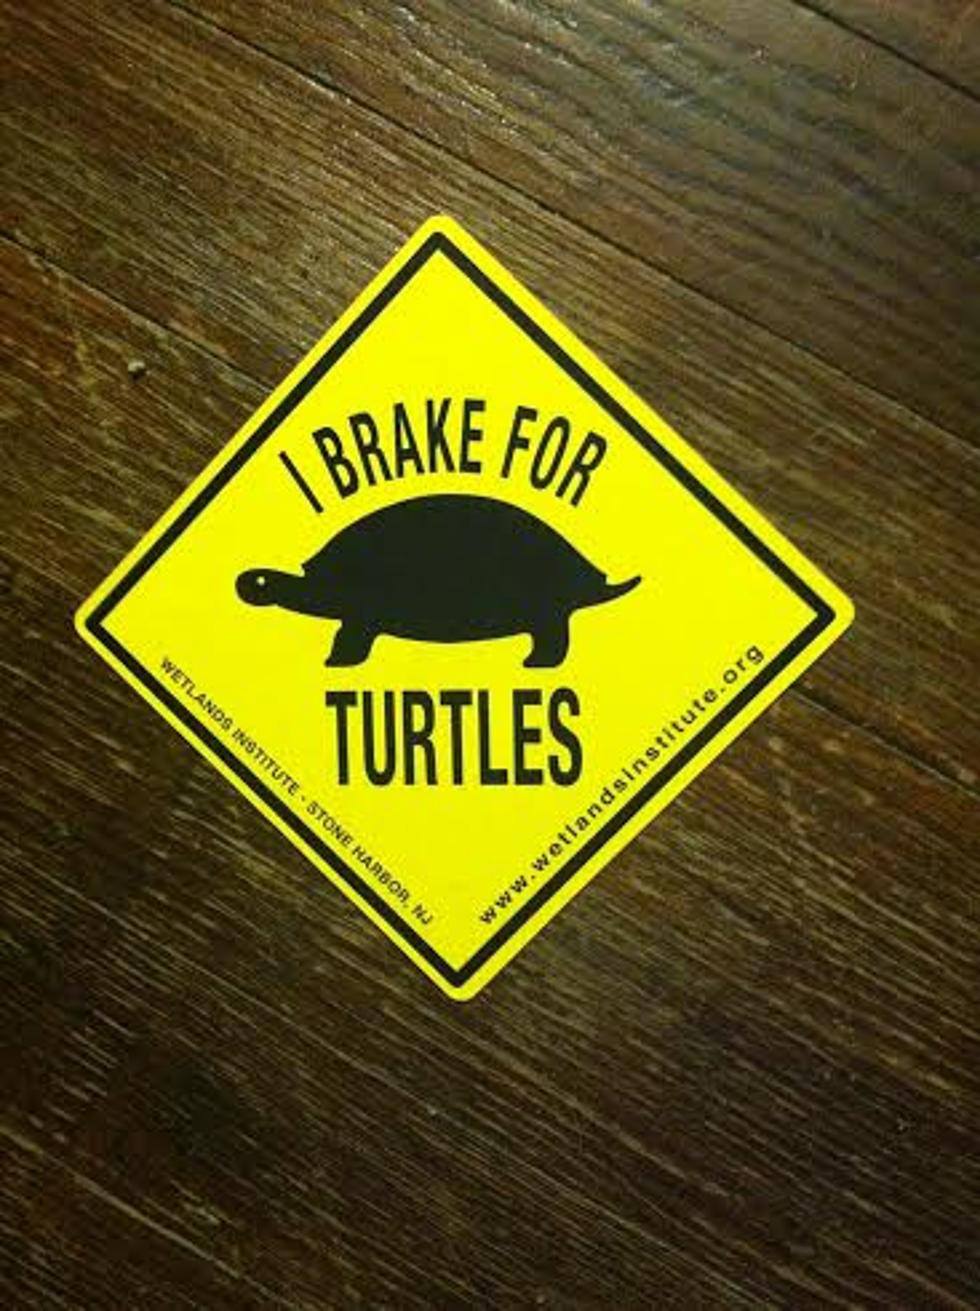 I Brake for Turtles